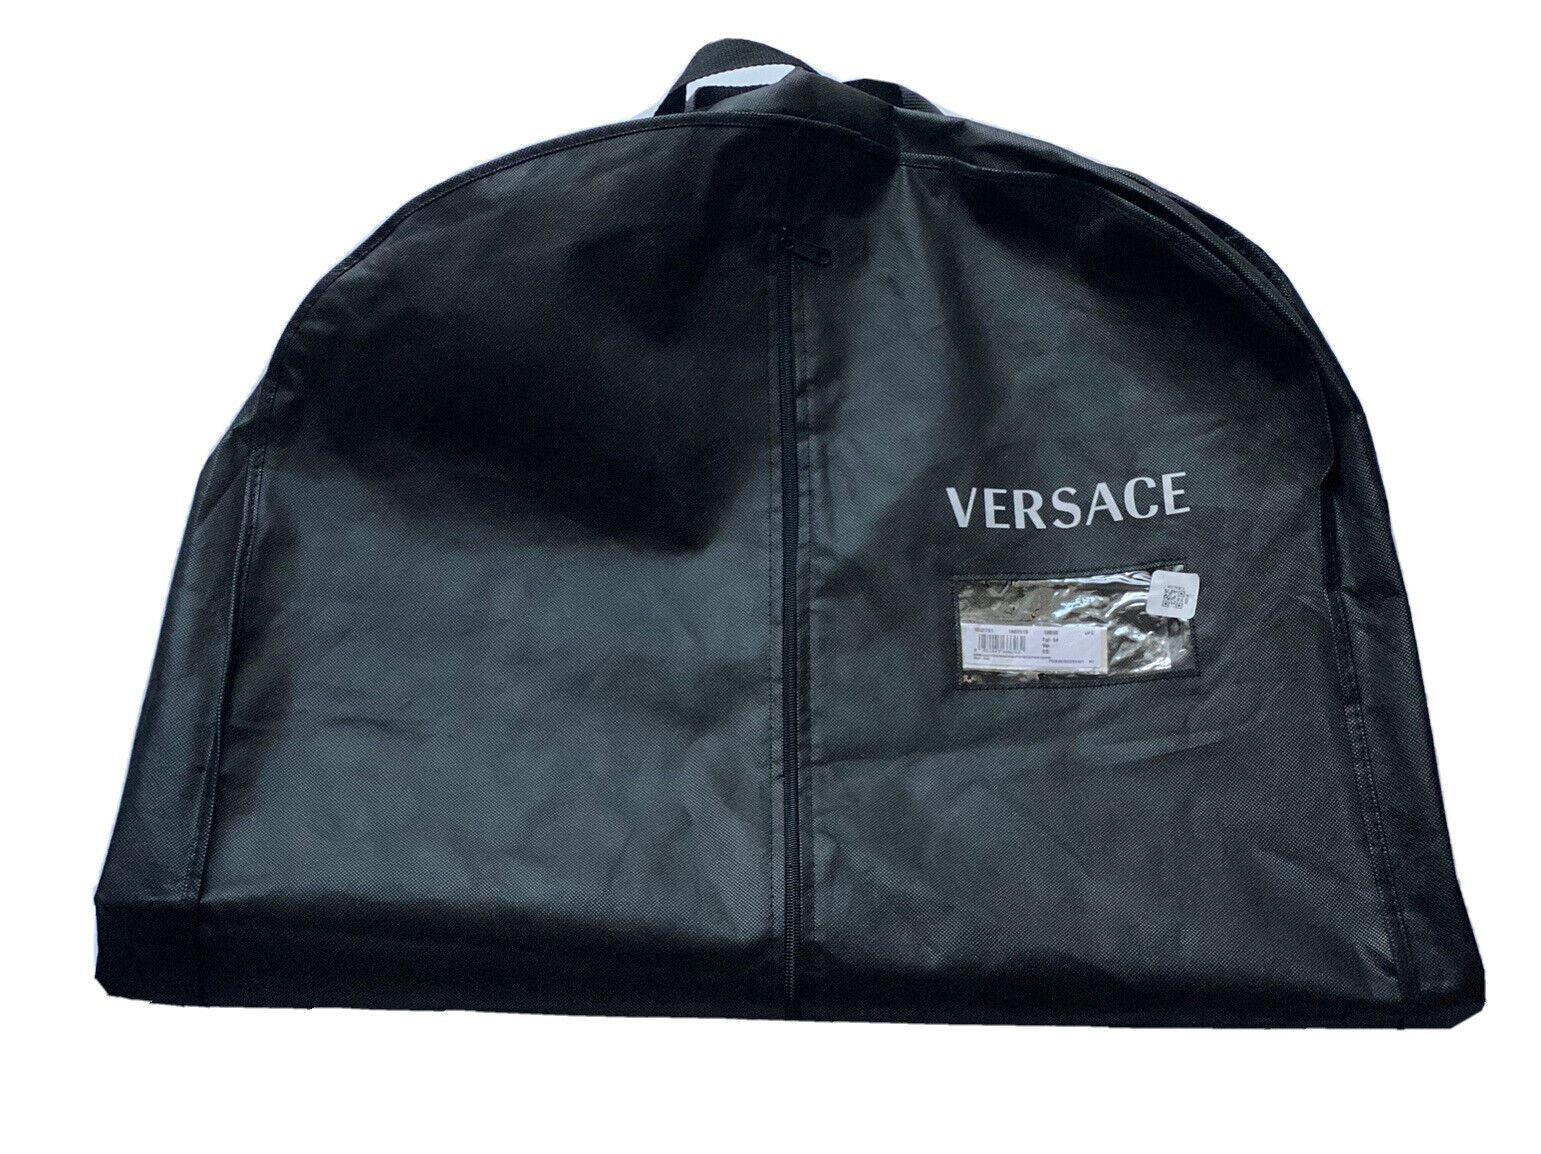 Совершенно новая складная сумка для одежды Versace, черная куртка/жилет, 43 дюйма x 23,5 дюйма 1002751 